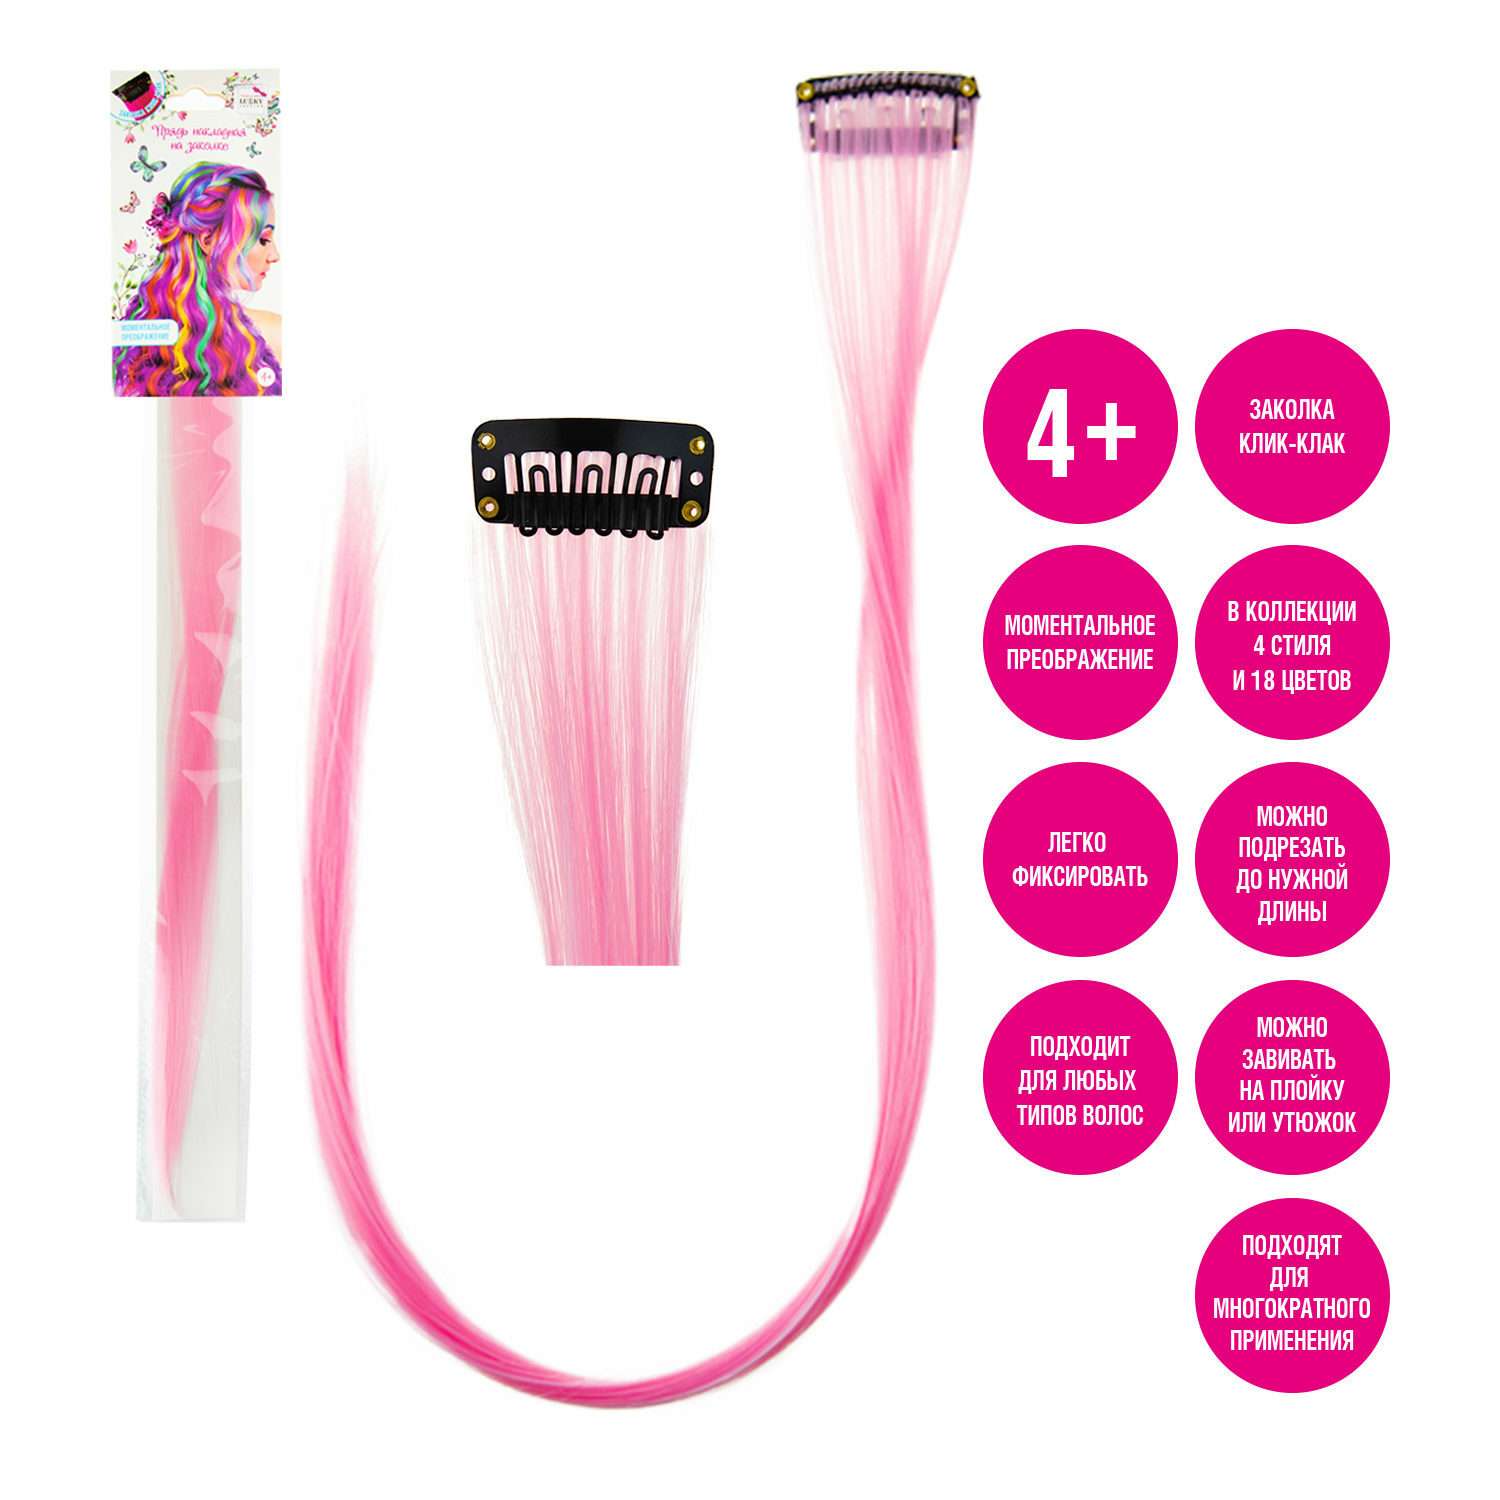 Цветные пряди для волос Lukky Lukky Fashion на заколках искусственные детские розовые 55 см аксессуары для девочек - фото 3